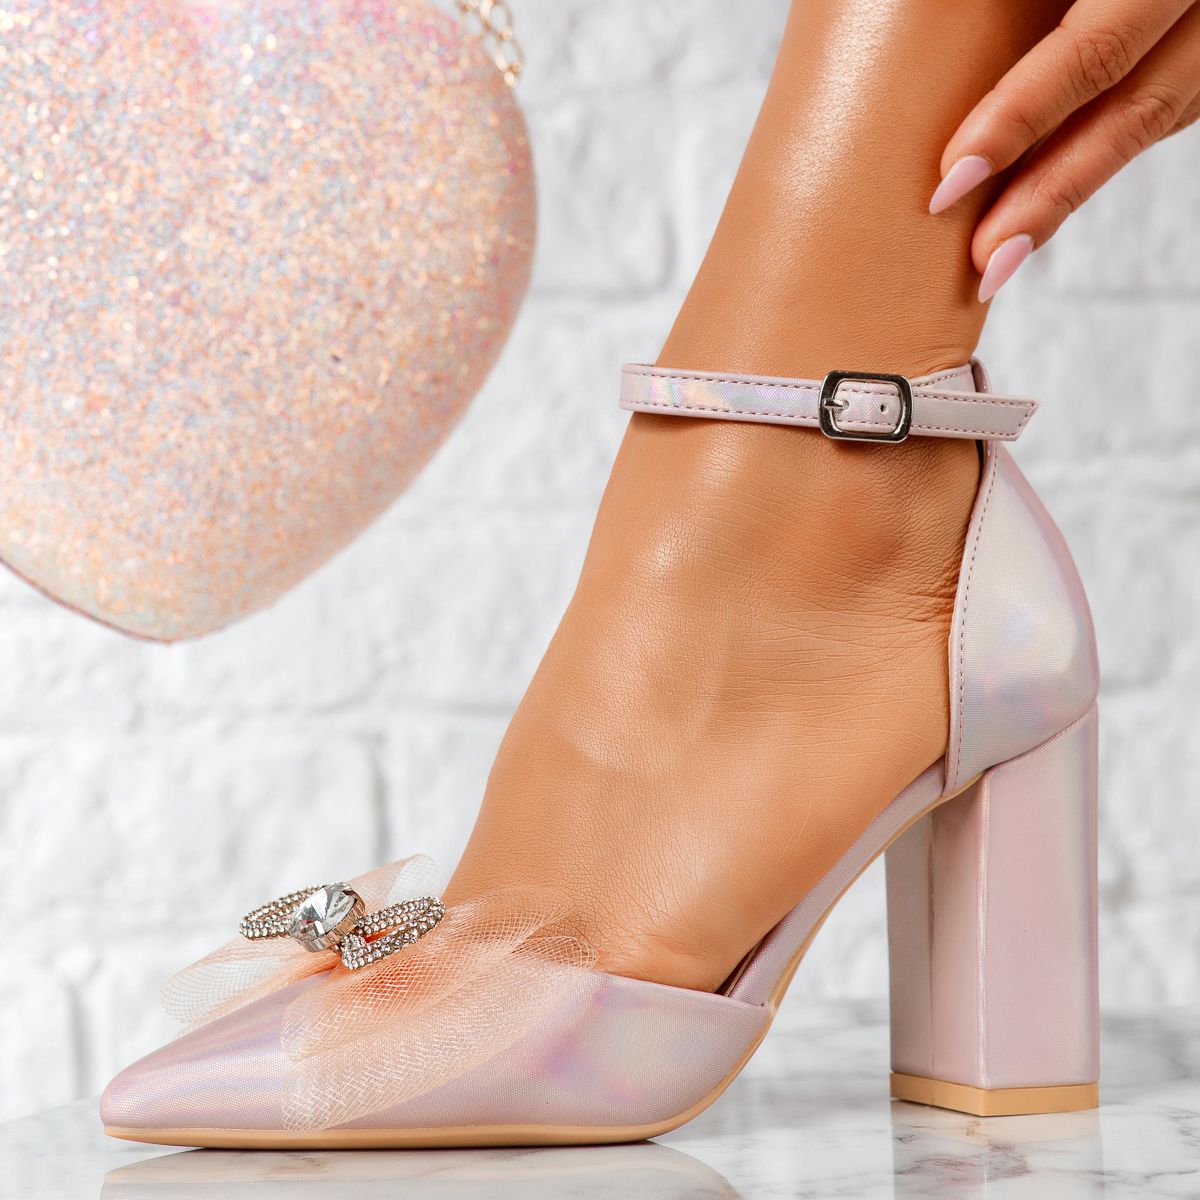 Pantofi Dama cu Toc Misty2 Roz/Aurii #14226